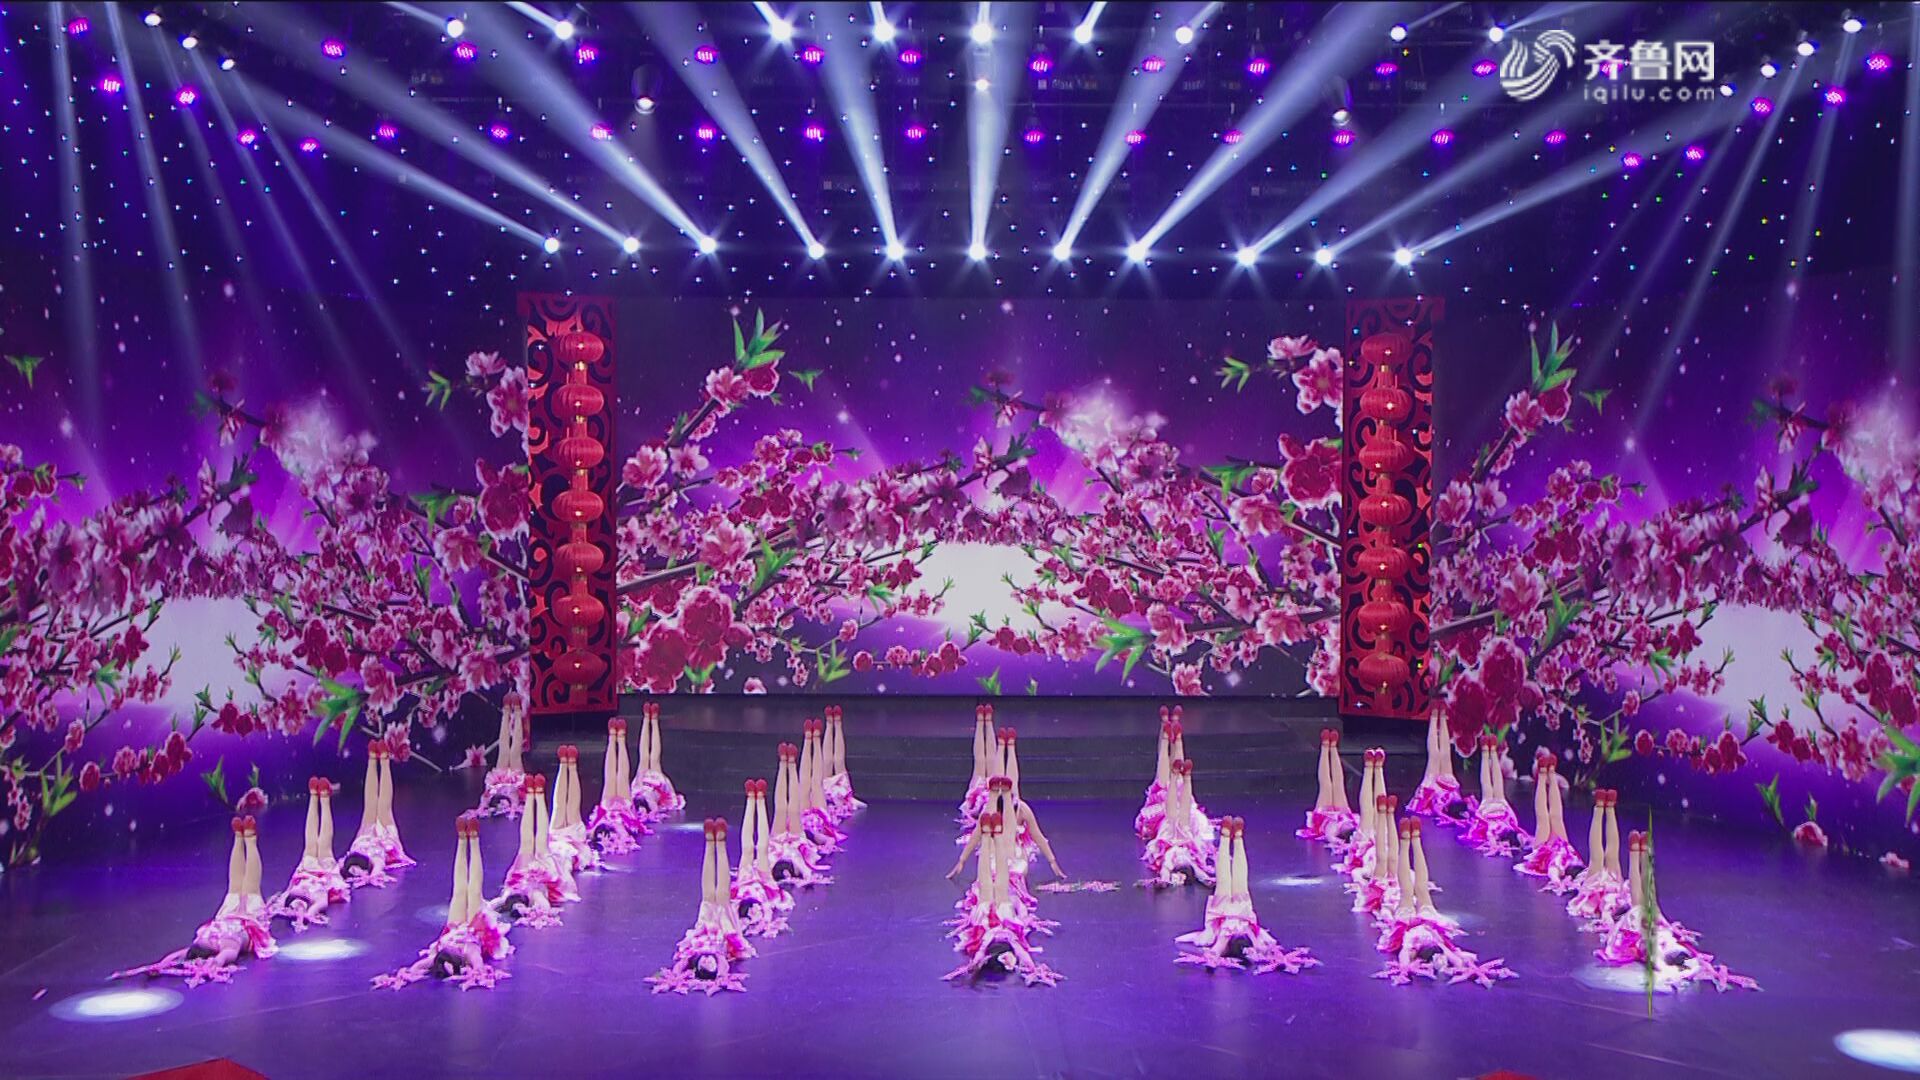 舞蹈《桃花朵朵开》——2019山东广播电视台少儿春节大联欢优秀节目展播